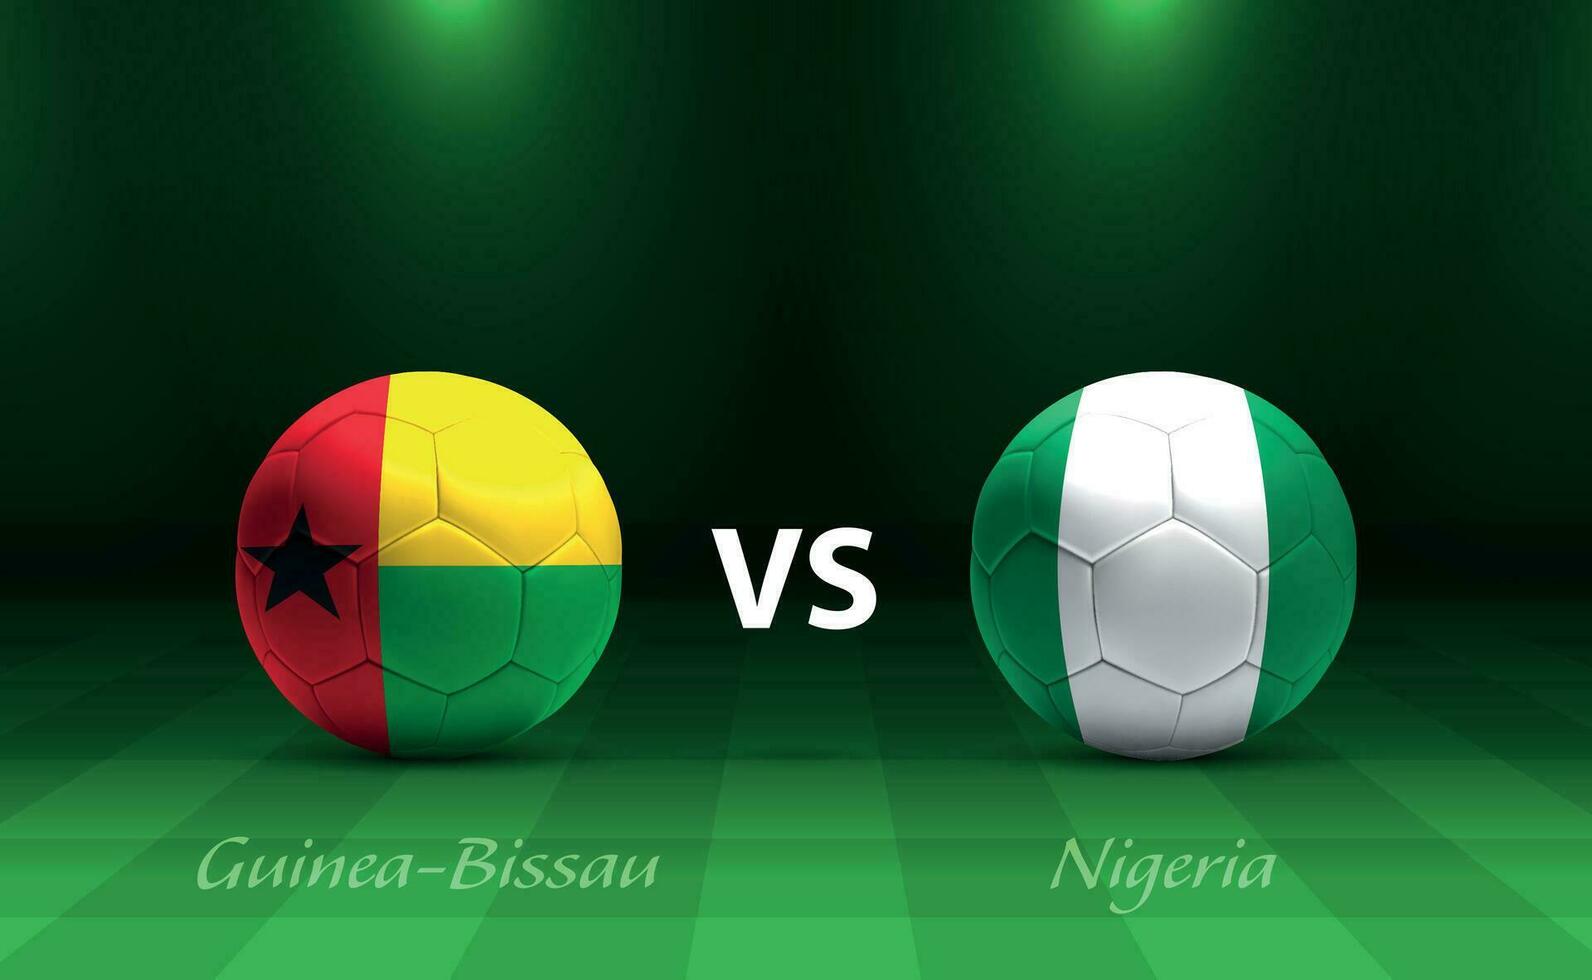 Guinea-Bissau vs Amerikaans voetbal scorebord uitzending sjabloon vector